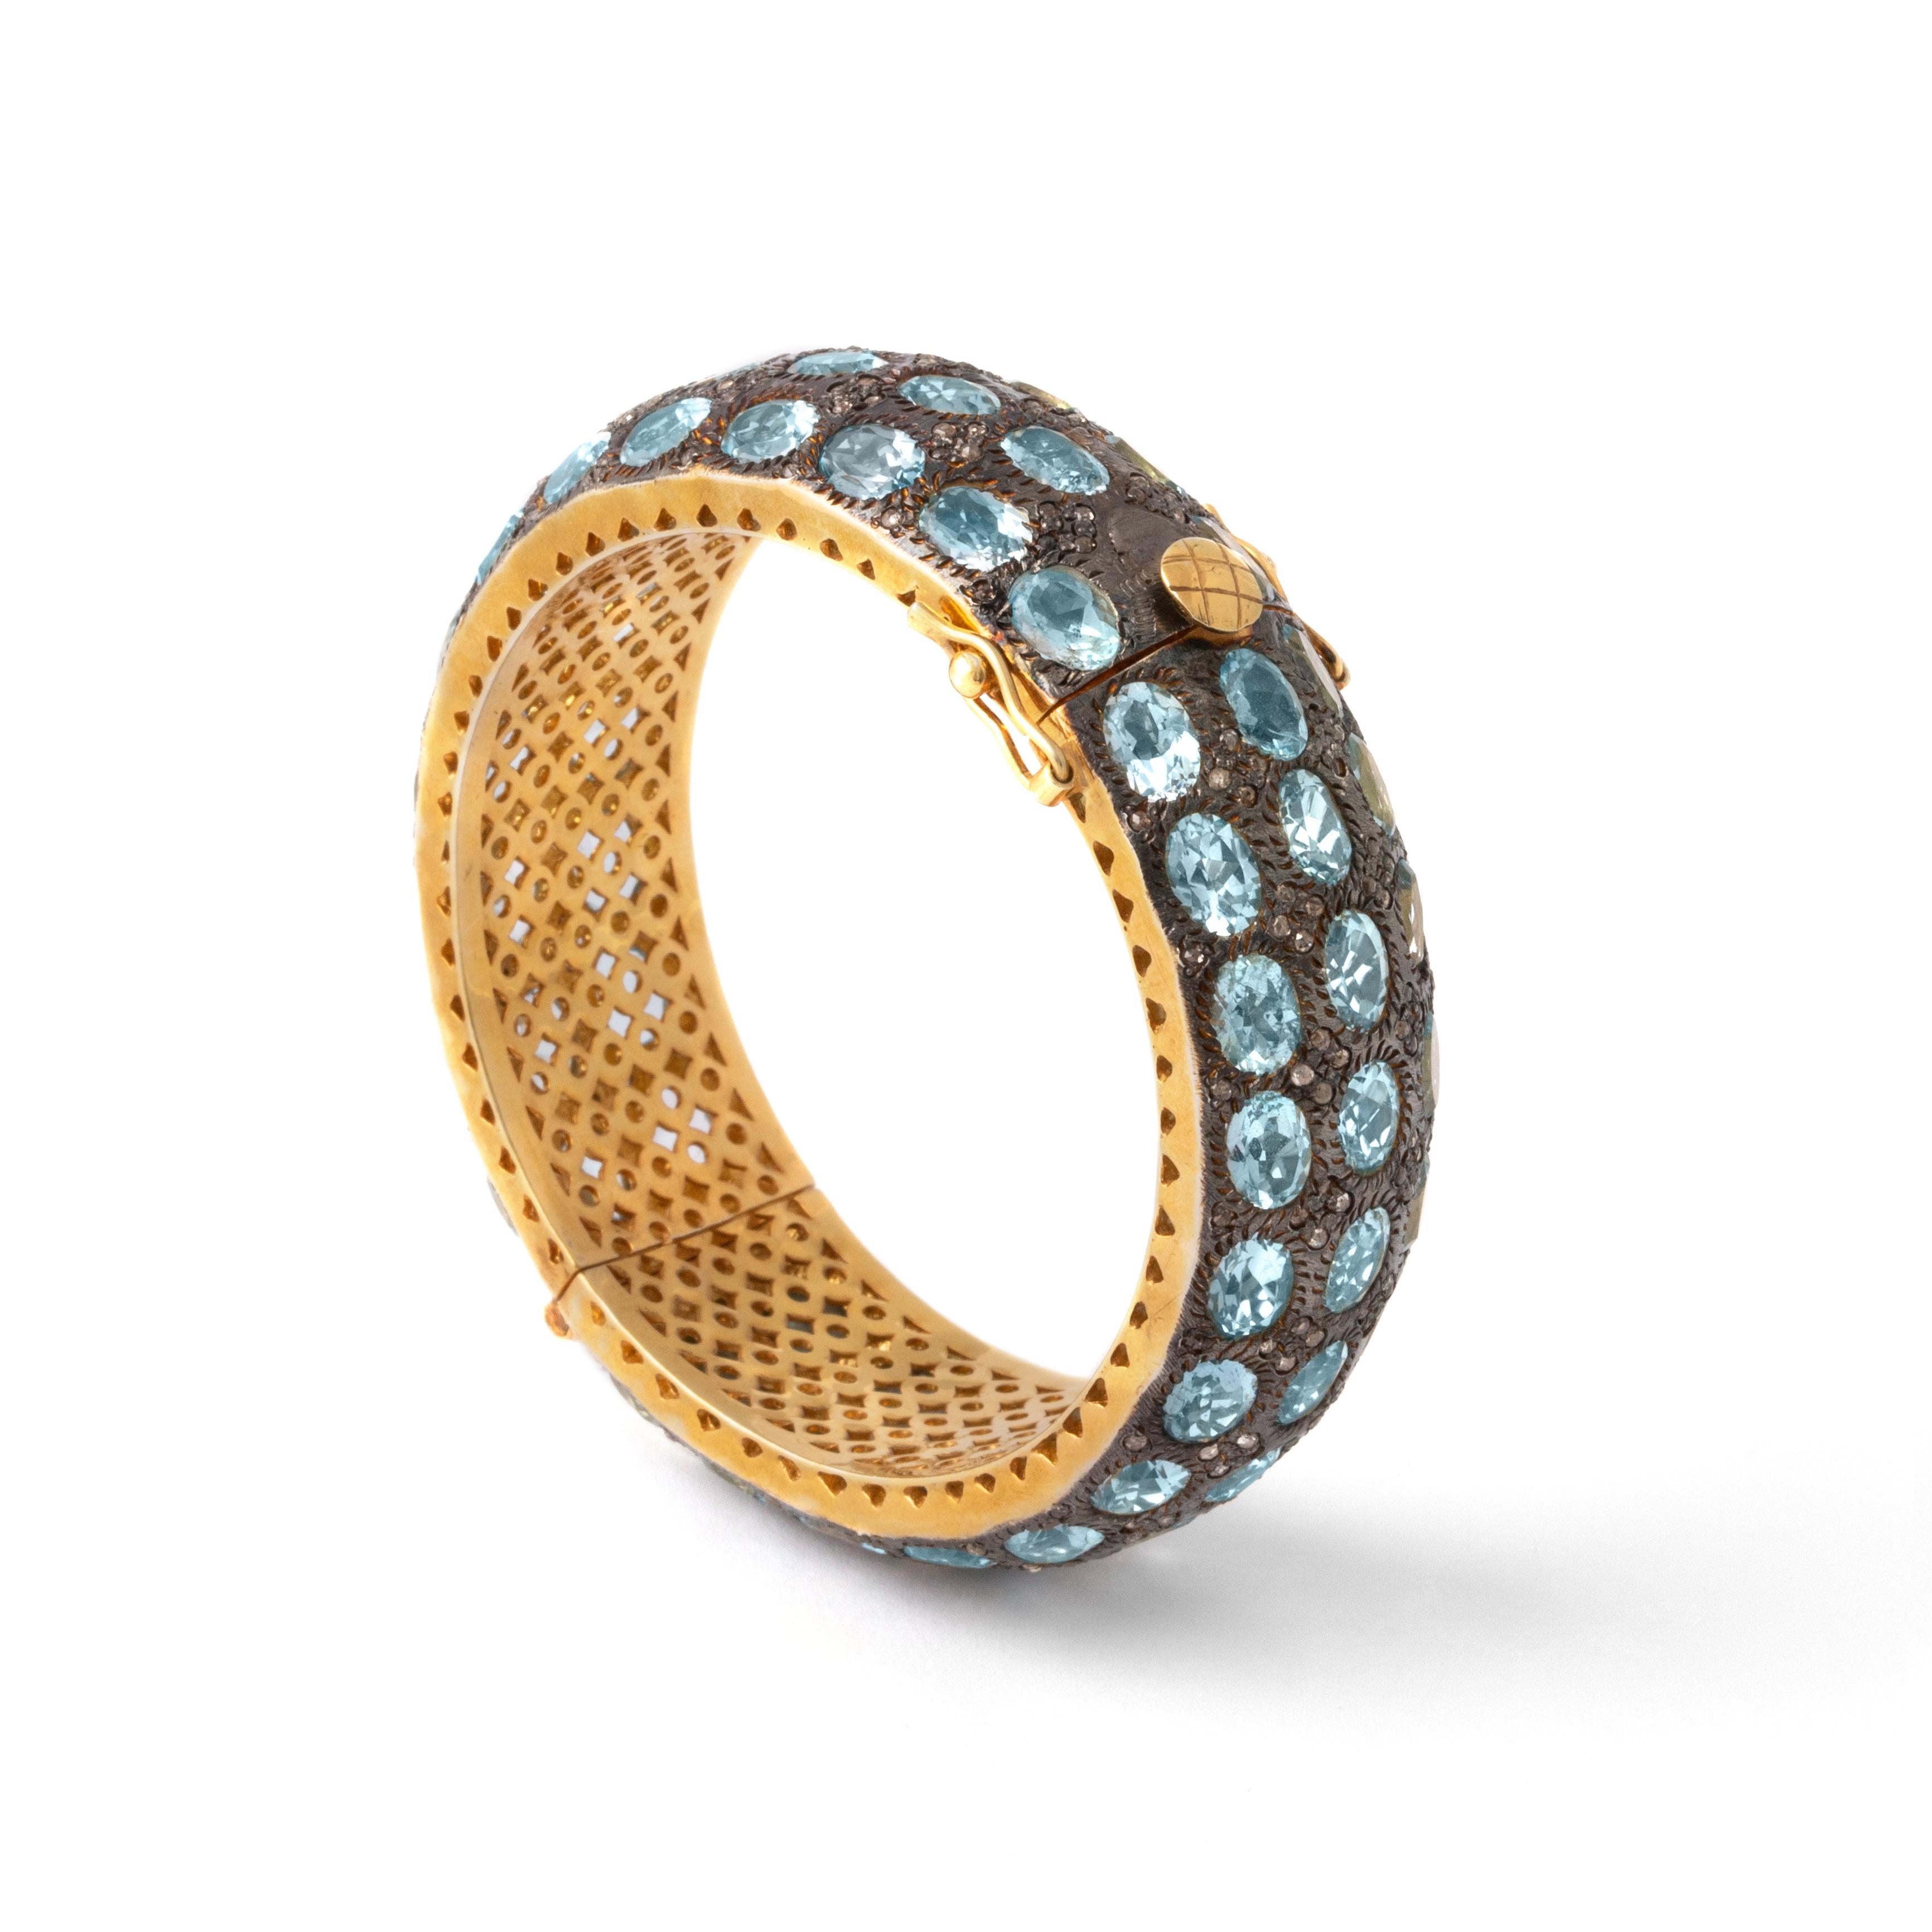 Eleganz und Raffinesse verbinden sich in unserem Goldarmband mit Aquamarin-Ovalschliff - eine atemberaubende Verkörperung von raffiniertem Stil.

Im Mittelpunkt dieses exquisiten Schmuckstücks steht der faszinierende Aquamarin im Ovalschliff, der